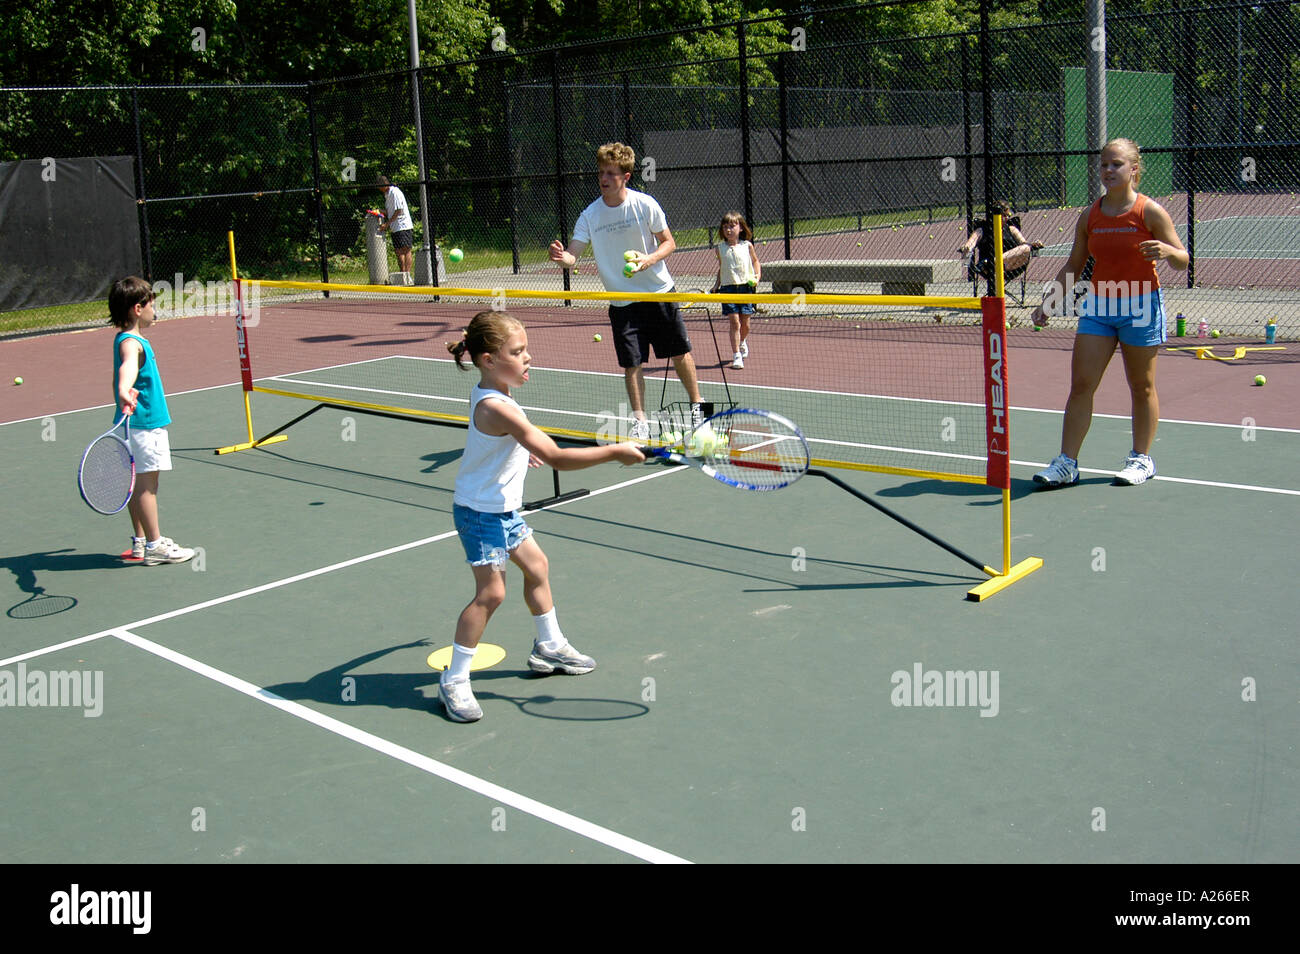 Las lecciones de tenis son proporcionados por el municipio local para ayudar a los niños a aprender el juego de tenis Foto de stock